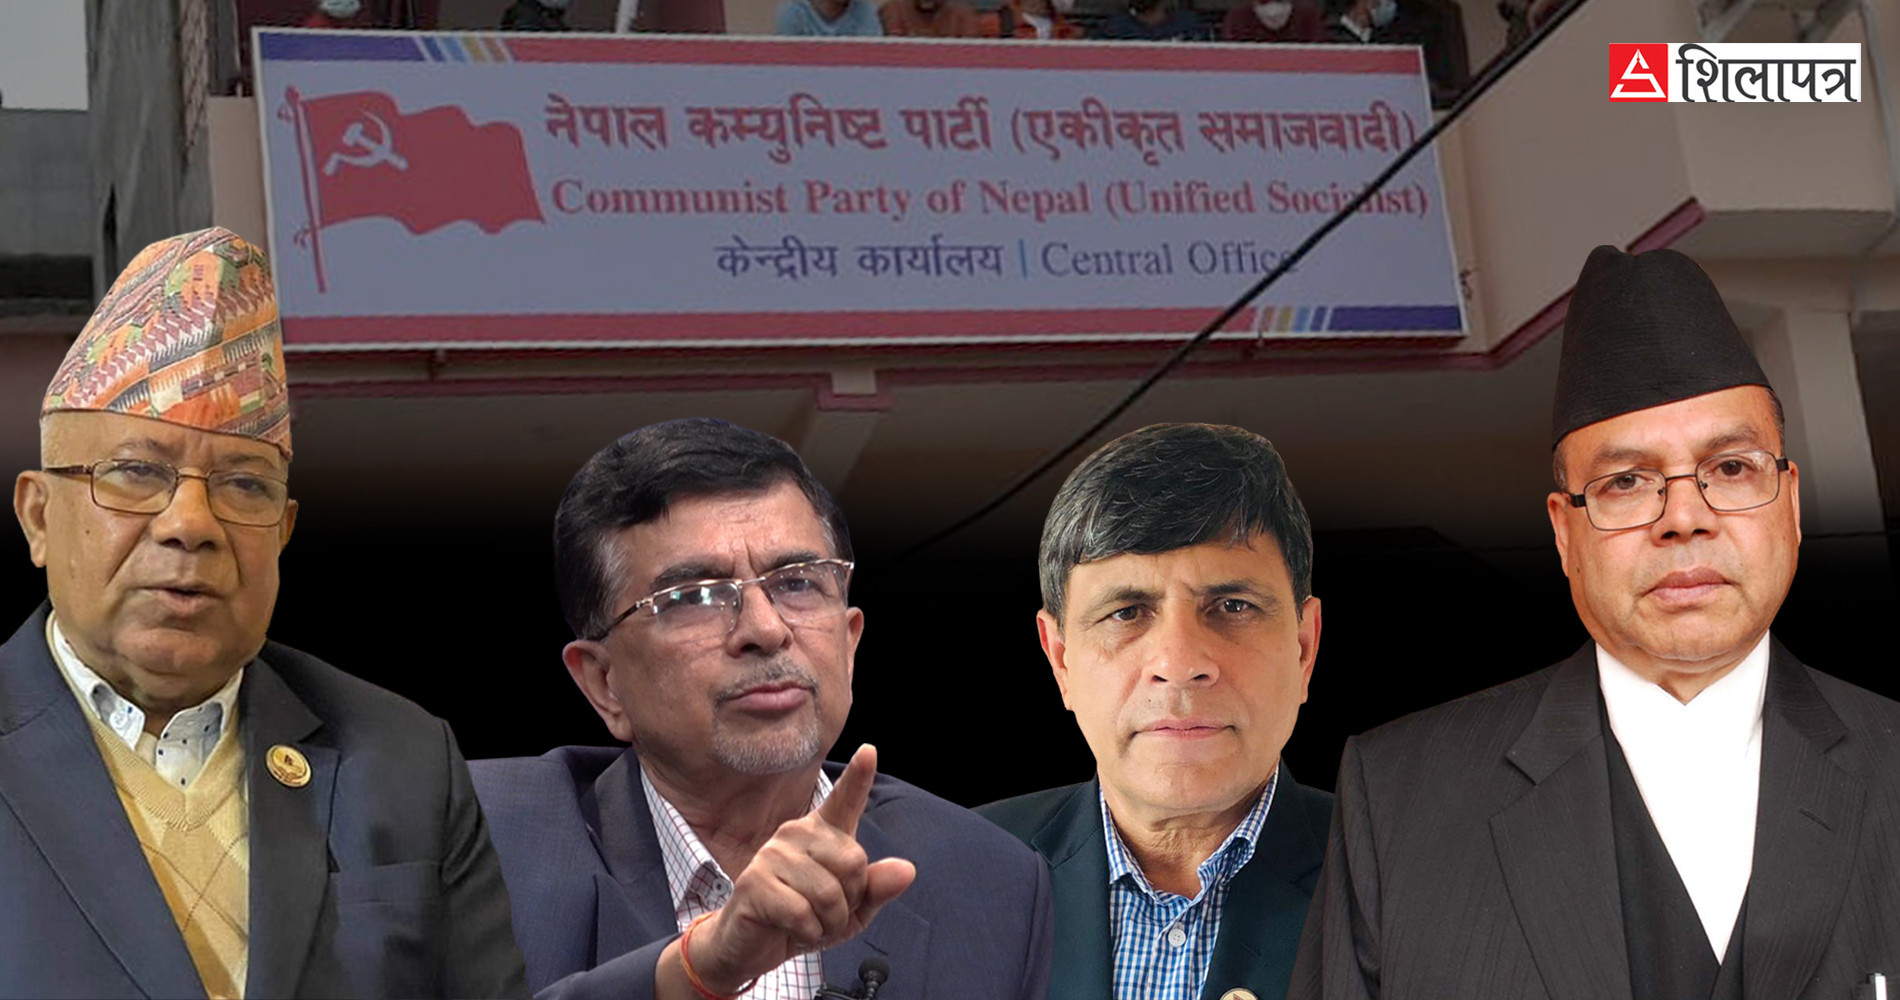 नेकपा एसको निष्कर्षः पार्टीभित्र समस्या छैन, सरकारमा निरन्तर समर्थन रहन्छ